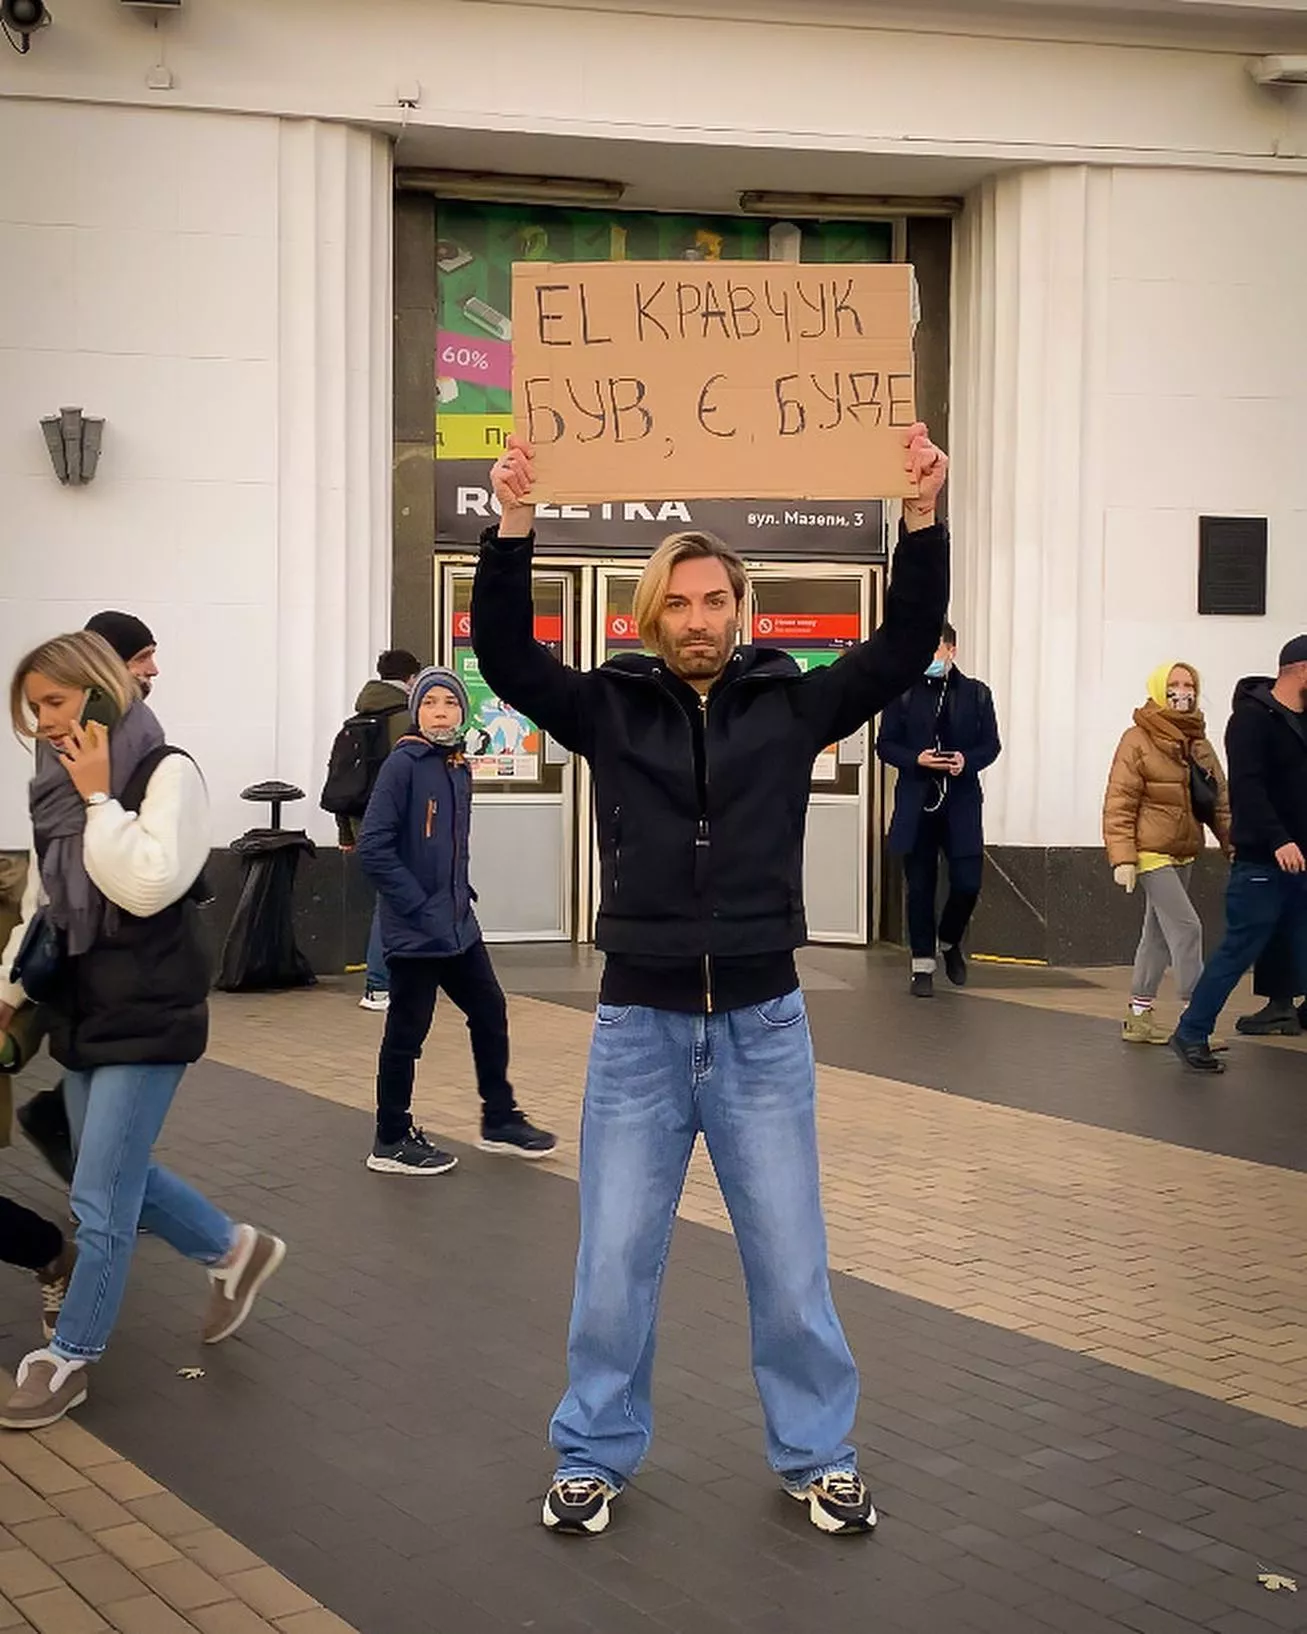 El Кравчук вийшов у центр Києва з табличками – артист пояснив, як відреагували люди